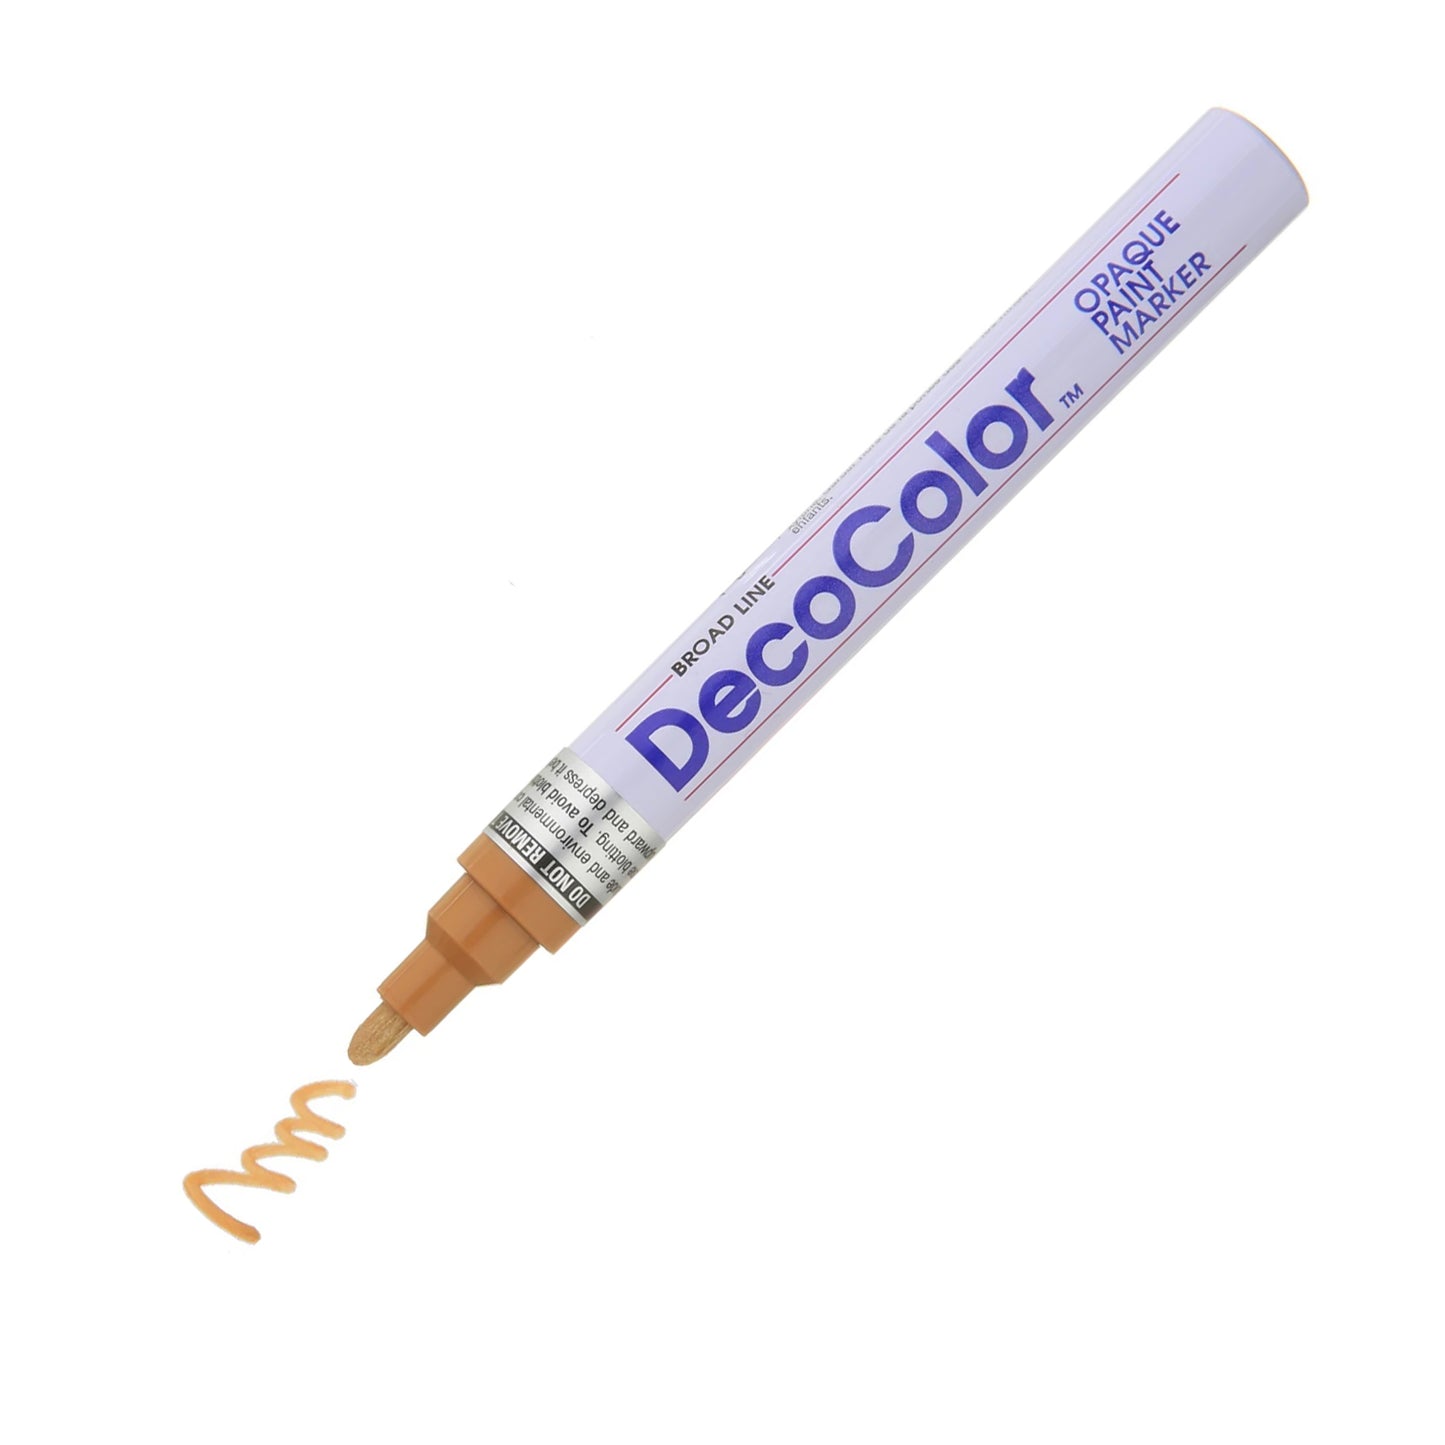 Decocolor verfmarker, 6 mm brede ronde punt